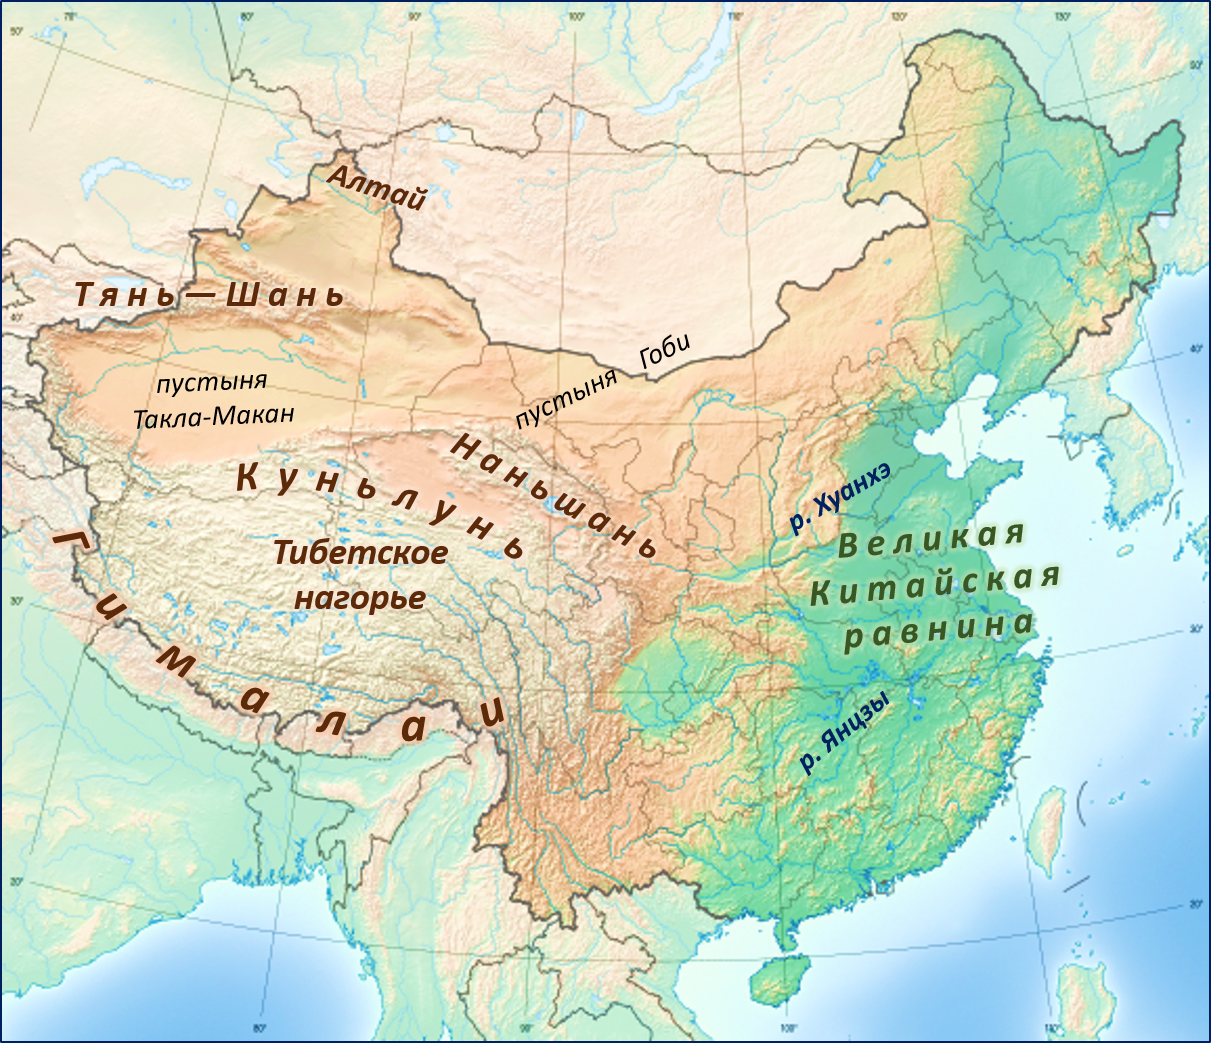 Рельеф Китая карта. Физико-географическая карта Китая. Великая китайская равнина границы на карте. Карта Китая географическая рельеф.